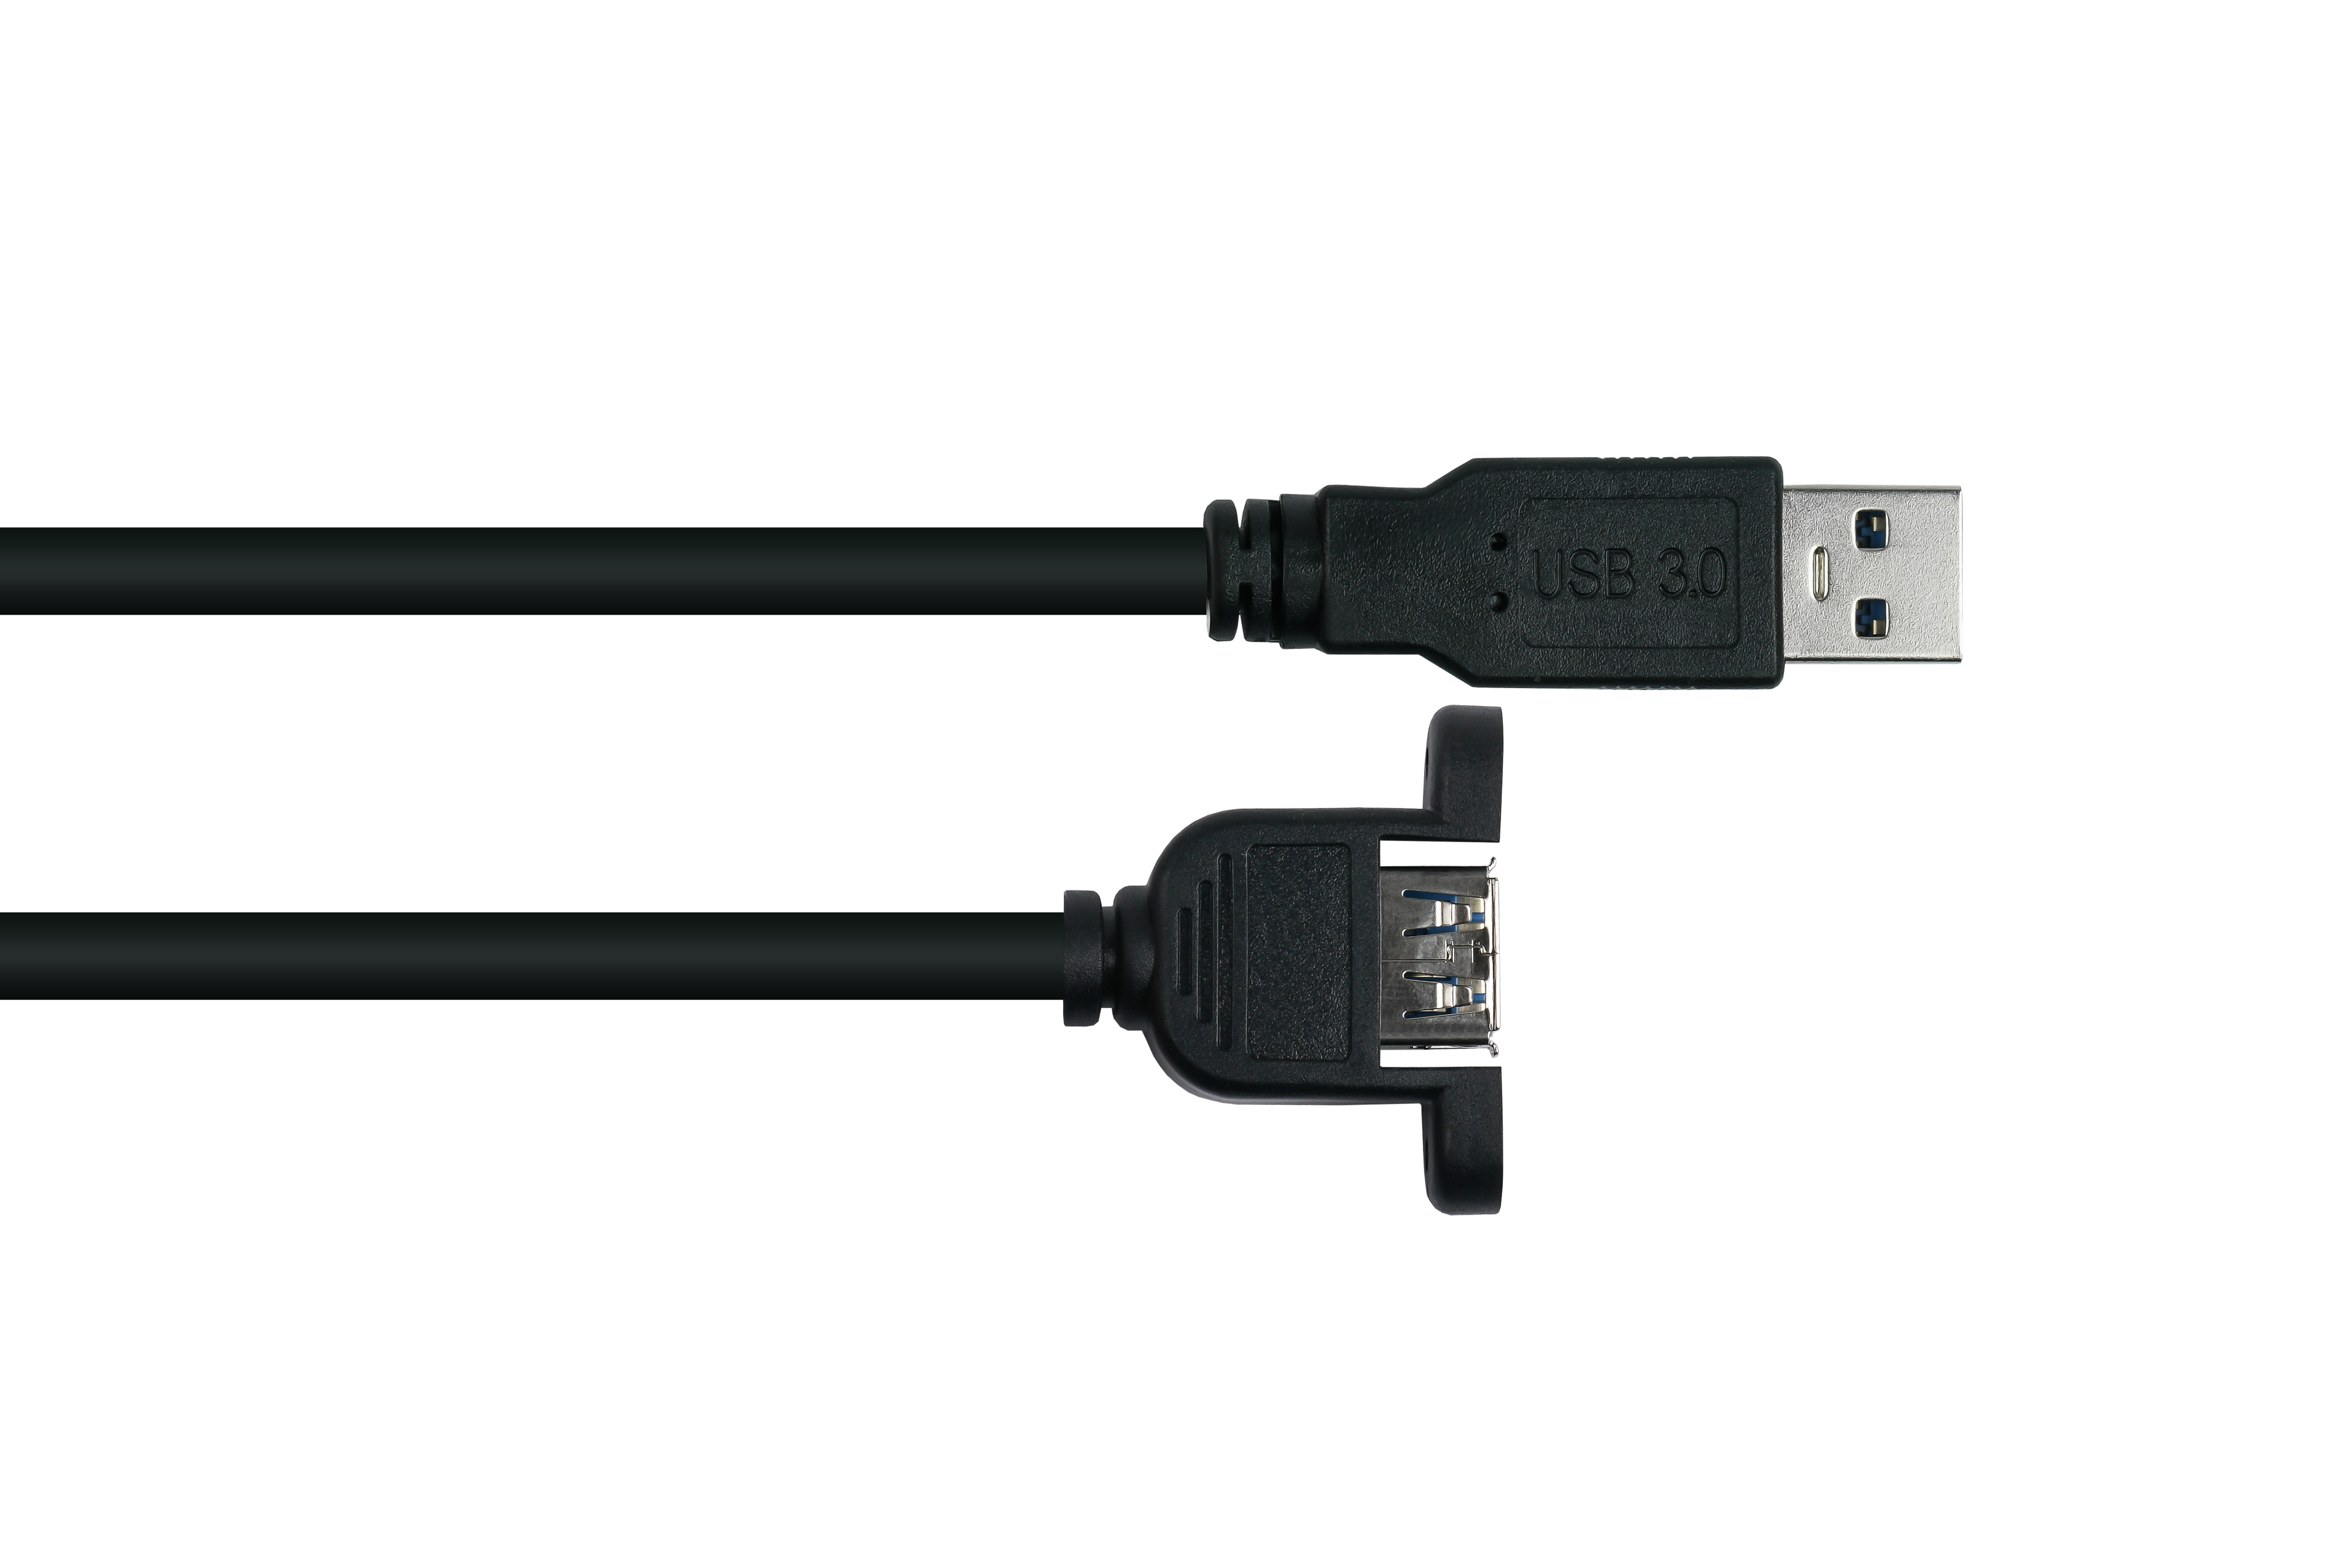 KABELMEISTER Stecker A 3.0 KUPFER, USB an AWG28 A,Premium, / Einbau-Verlängerung schwarz AWG24, Buchse UL